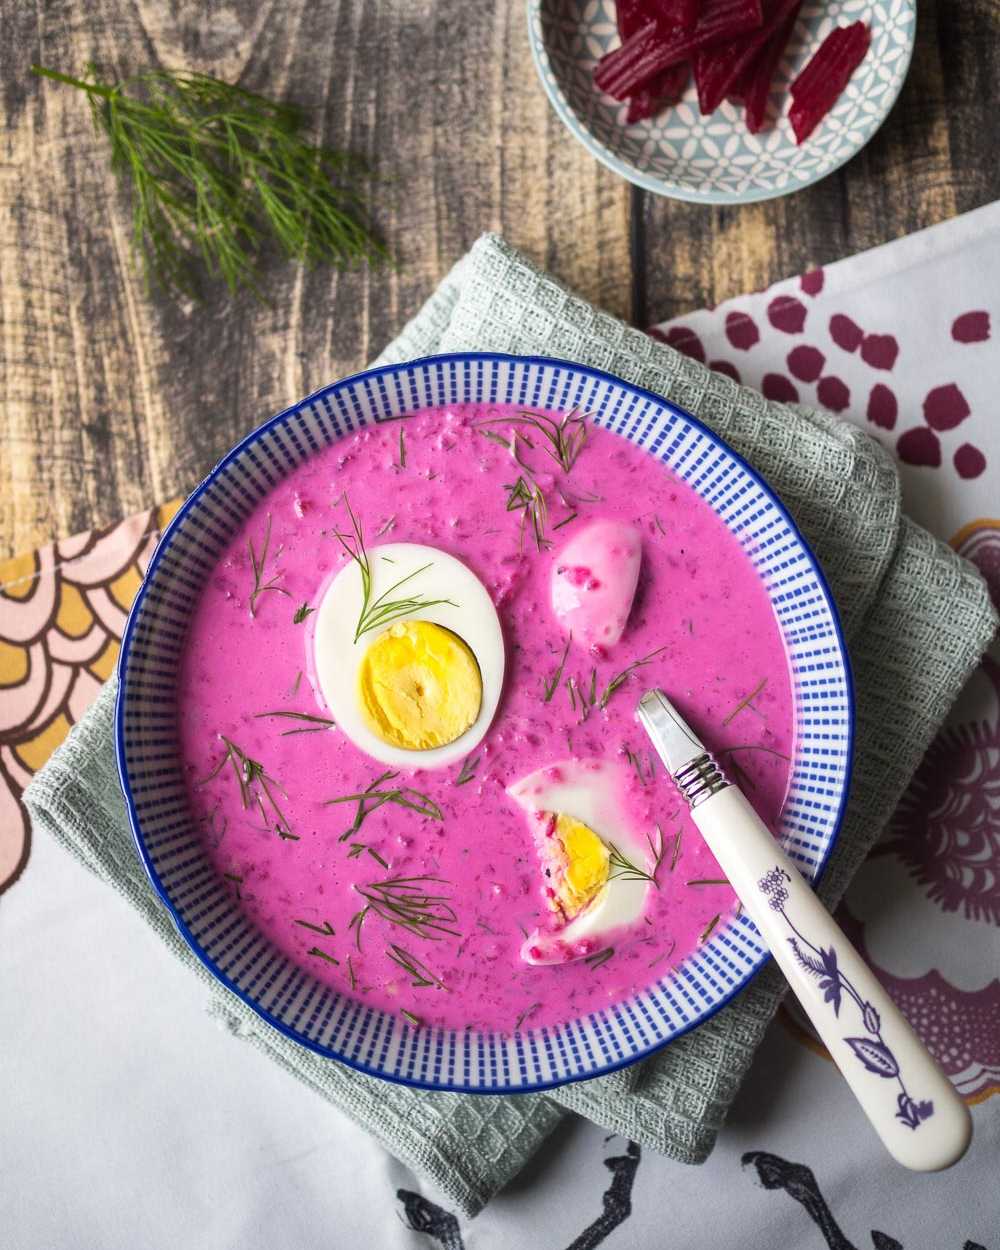 Litauische Rote-Bete-Kaltschale Saltibarsciai mit gekochtem Ei | GourmetGuerilla.de